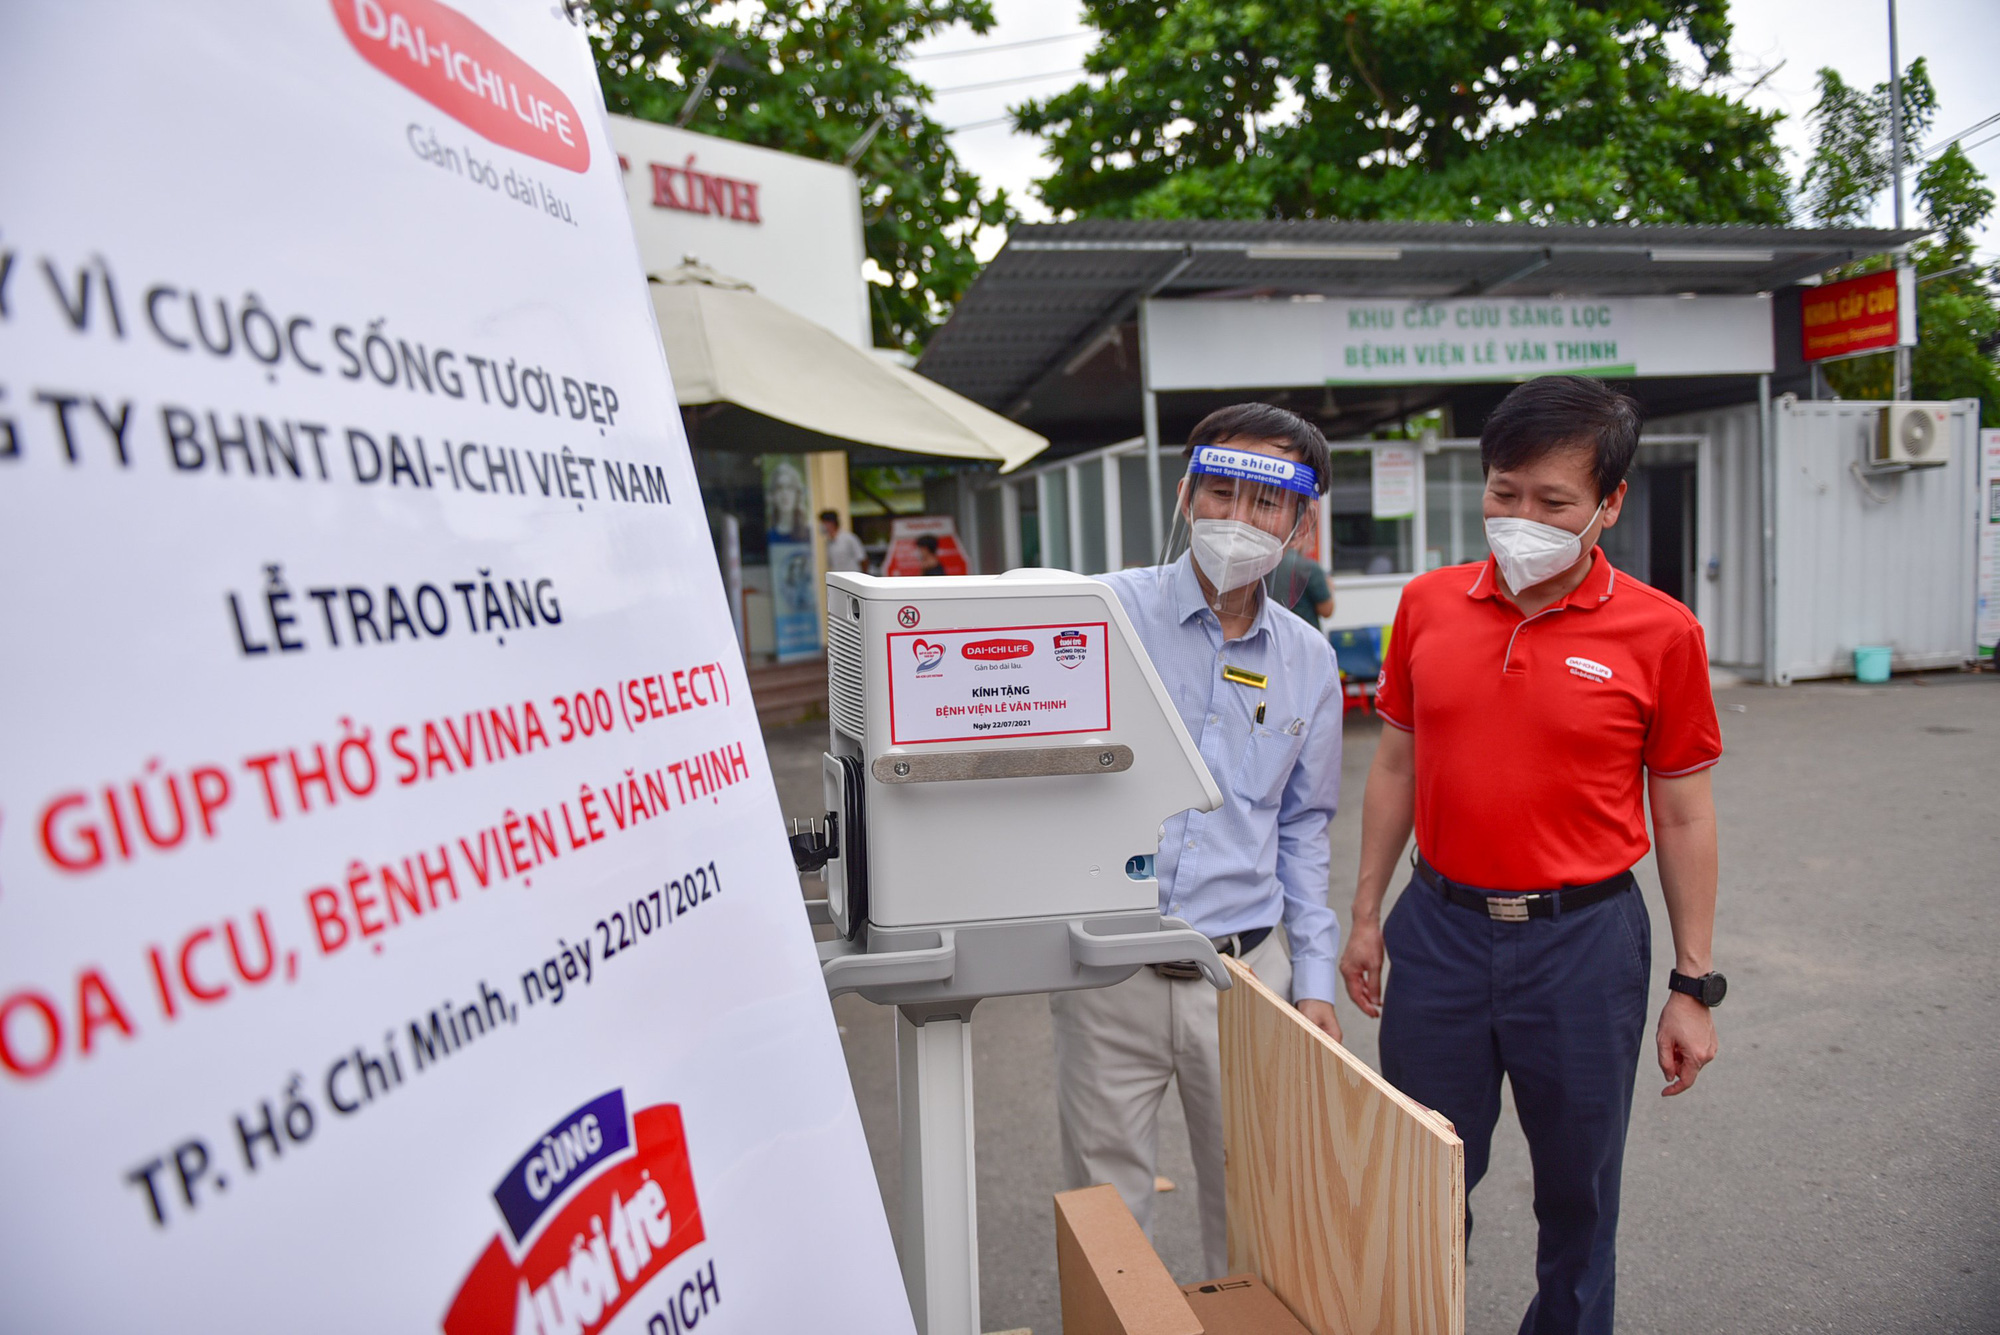 Dai-ichi Life Việt Nam trao tặng máy giúp thở đa năng Savina 300 (Select) cho Bệnh viện Lê Văn Thịnh